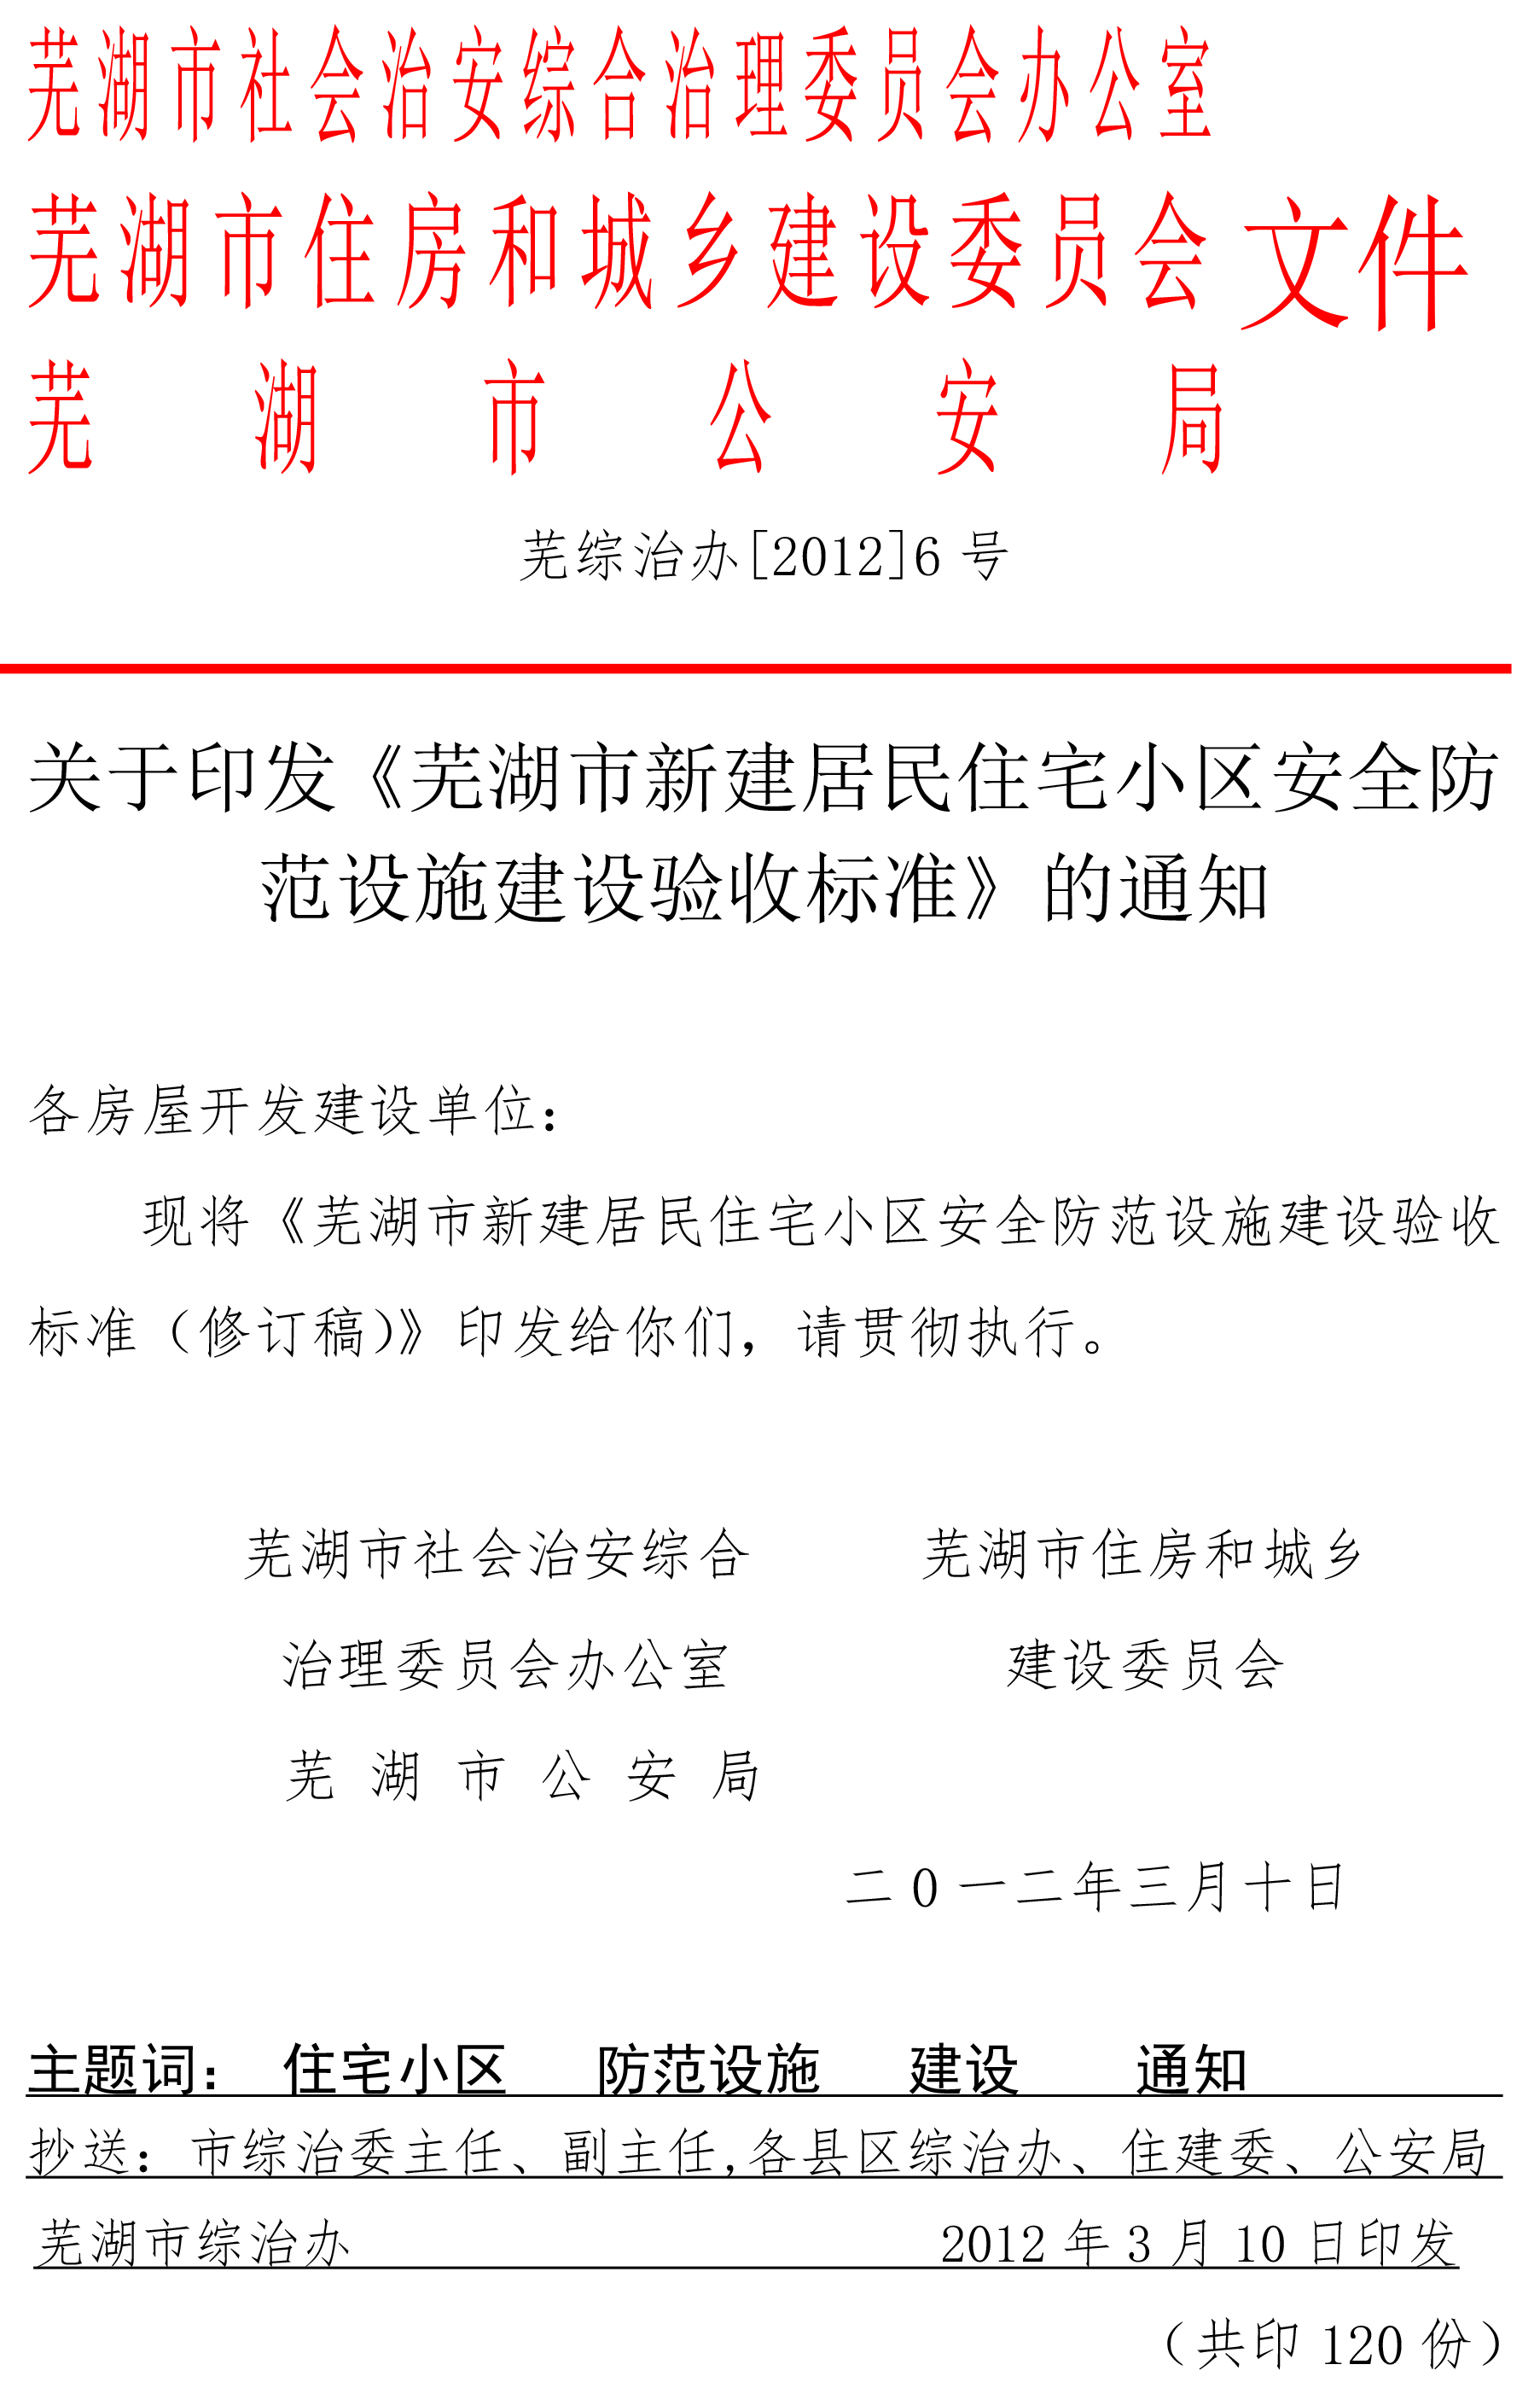 蕪湖市新建居民小區安全防范設施建設驗收標準-1.jpg